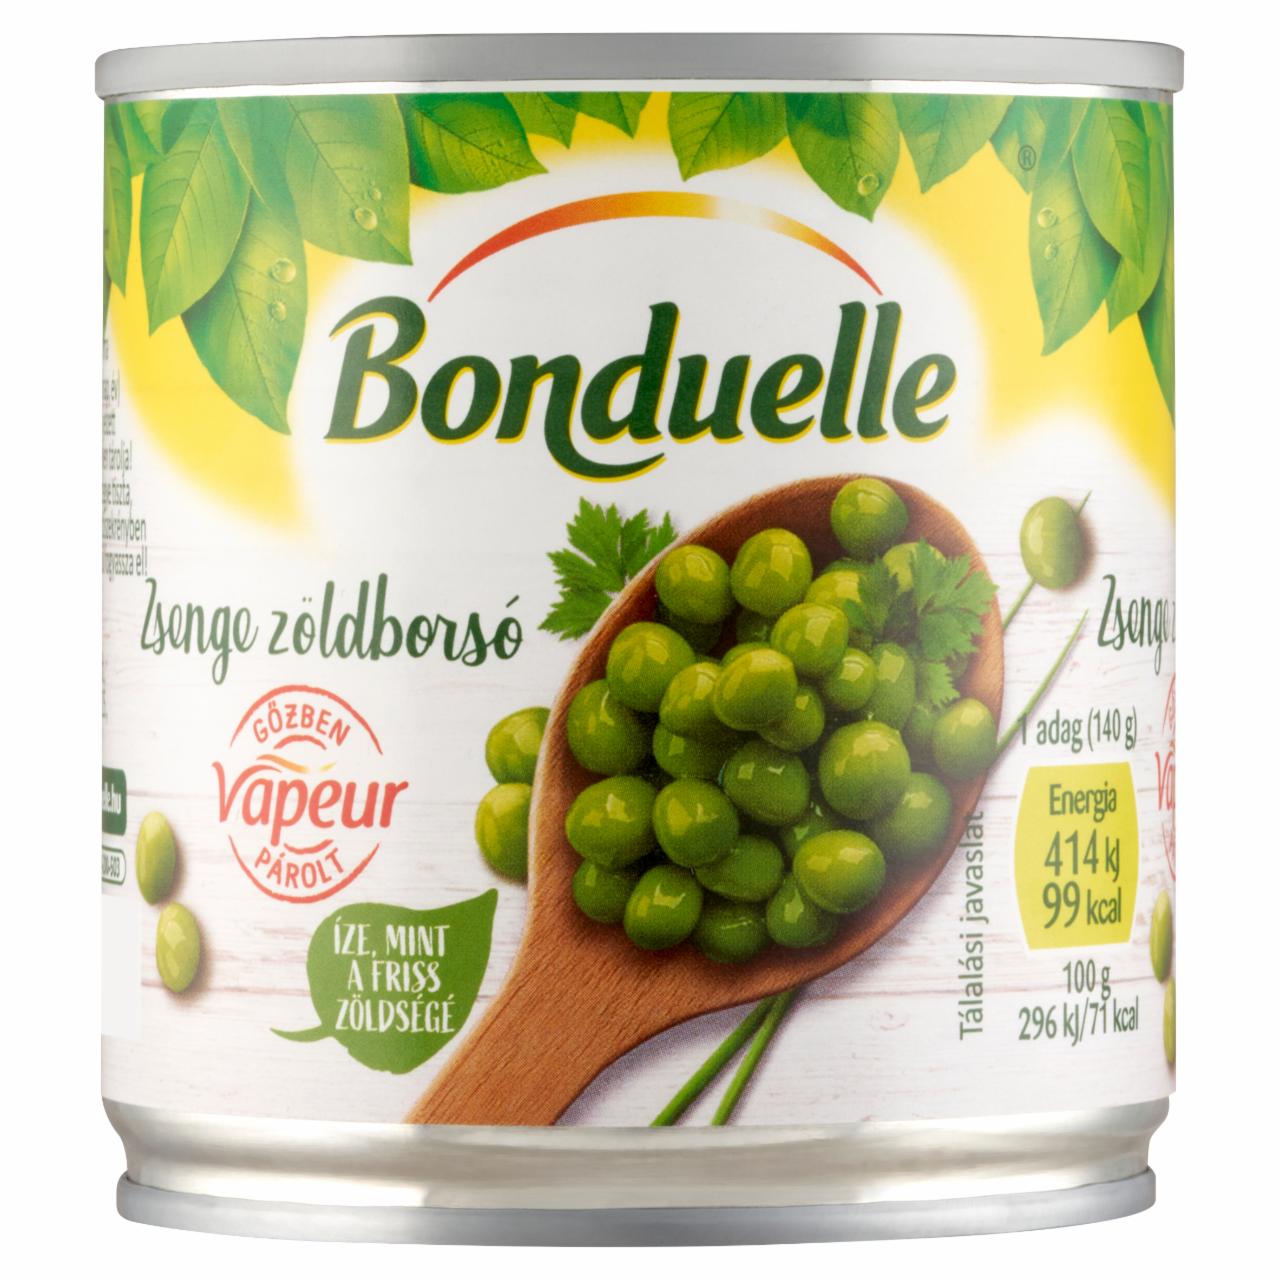 Képek - Bonduelle Vapeur gőzben párolt zsenge zöldborsó 160 g